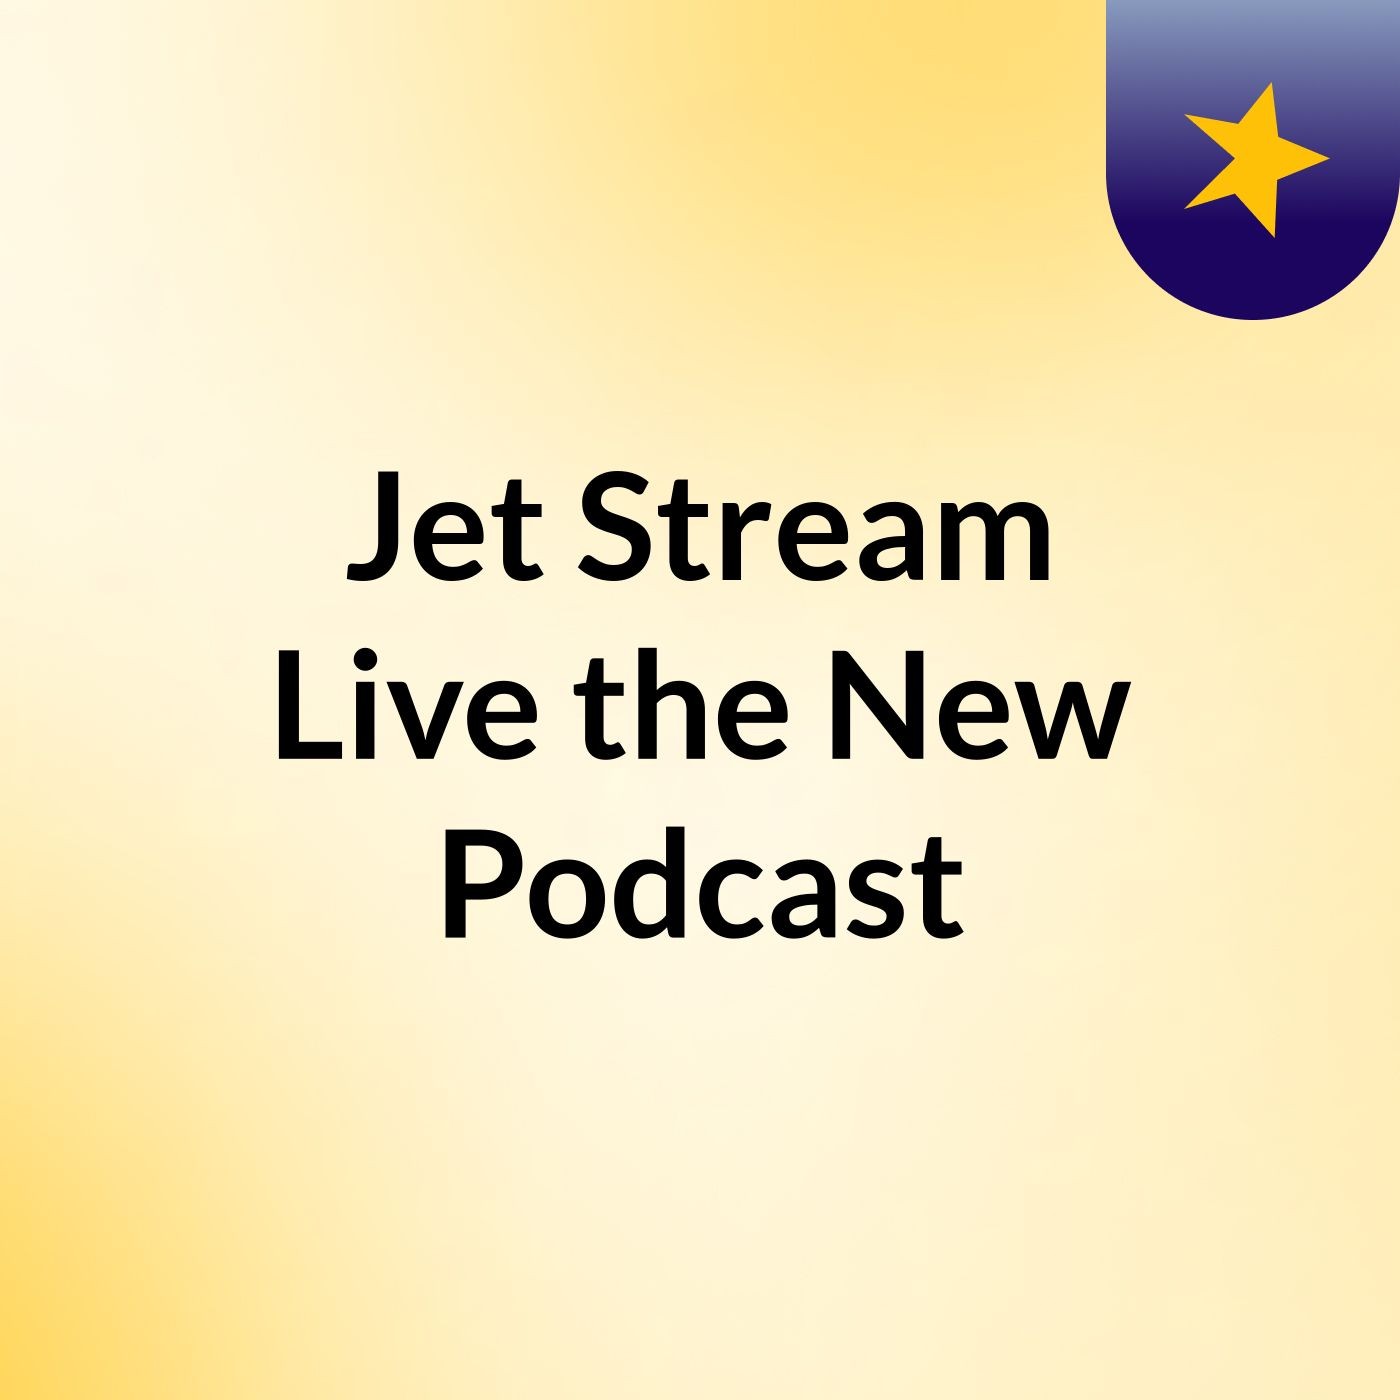 Jet Stream Live,the New Podcast